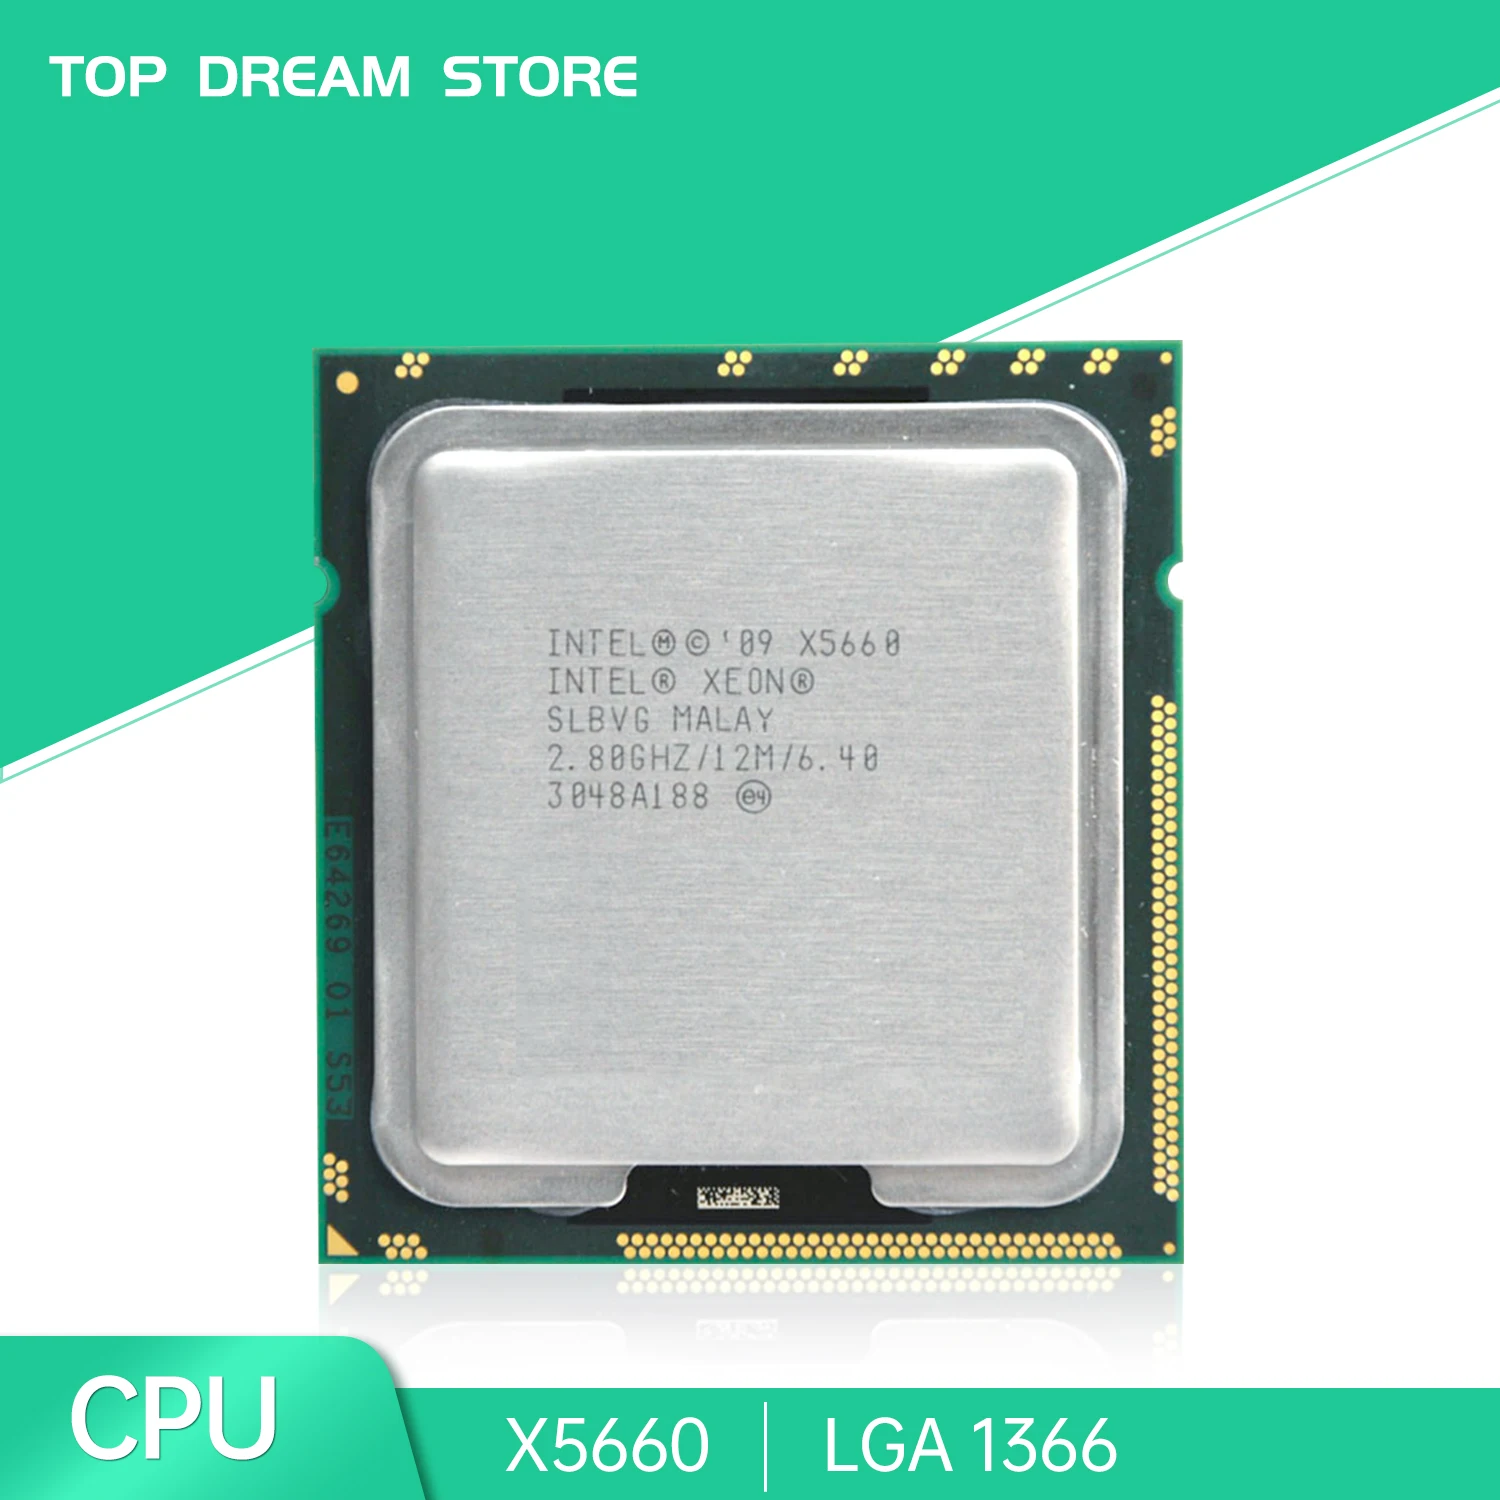 

Процессор Intel Xeon X5660, ЦП 2,8 ГГц LGA 1366 SLBVG, 6-ядерный процессор для настольных компьютеров X5660